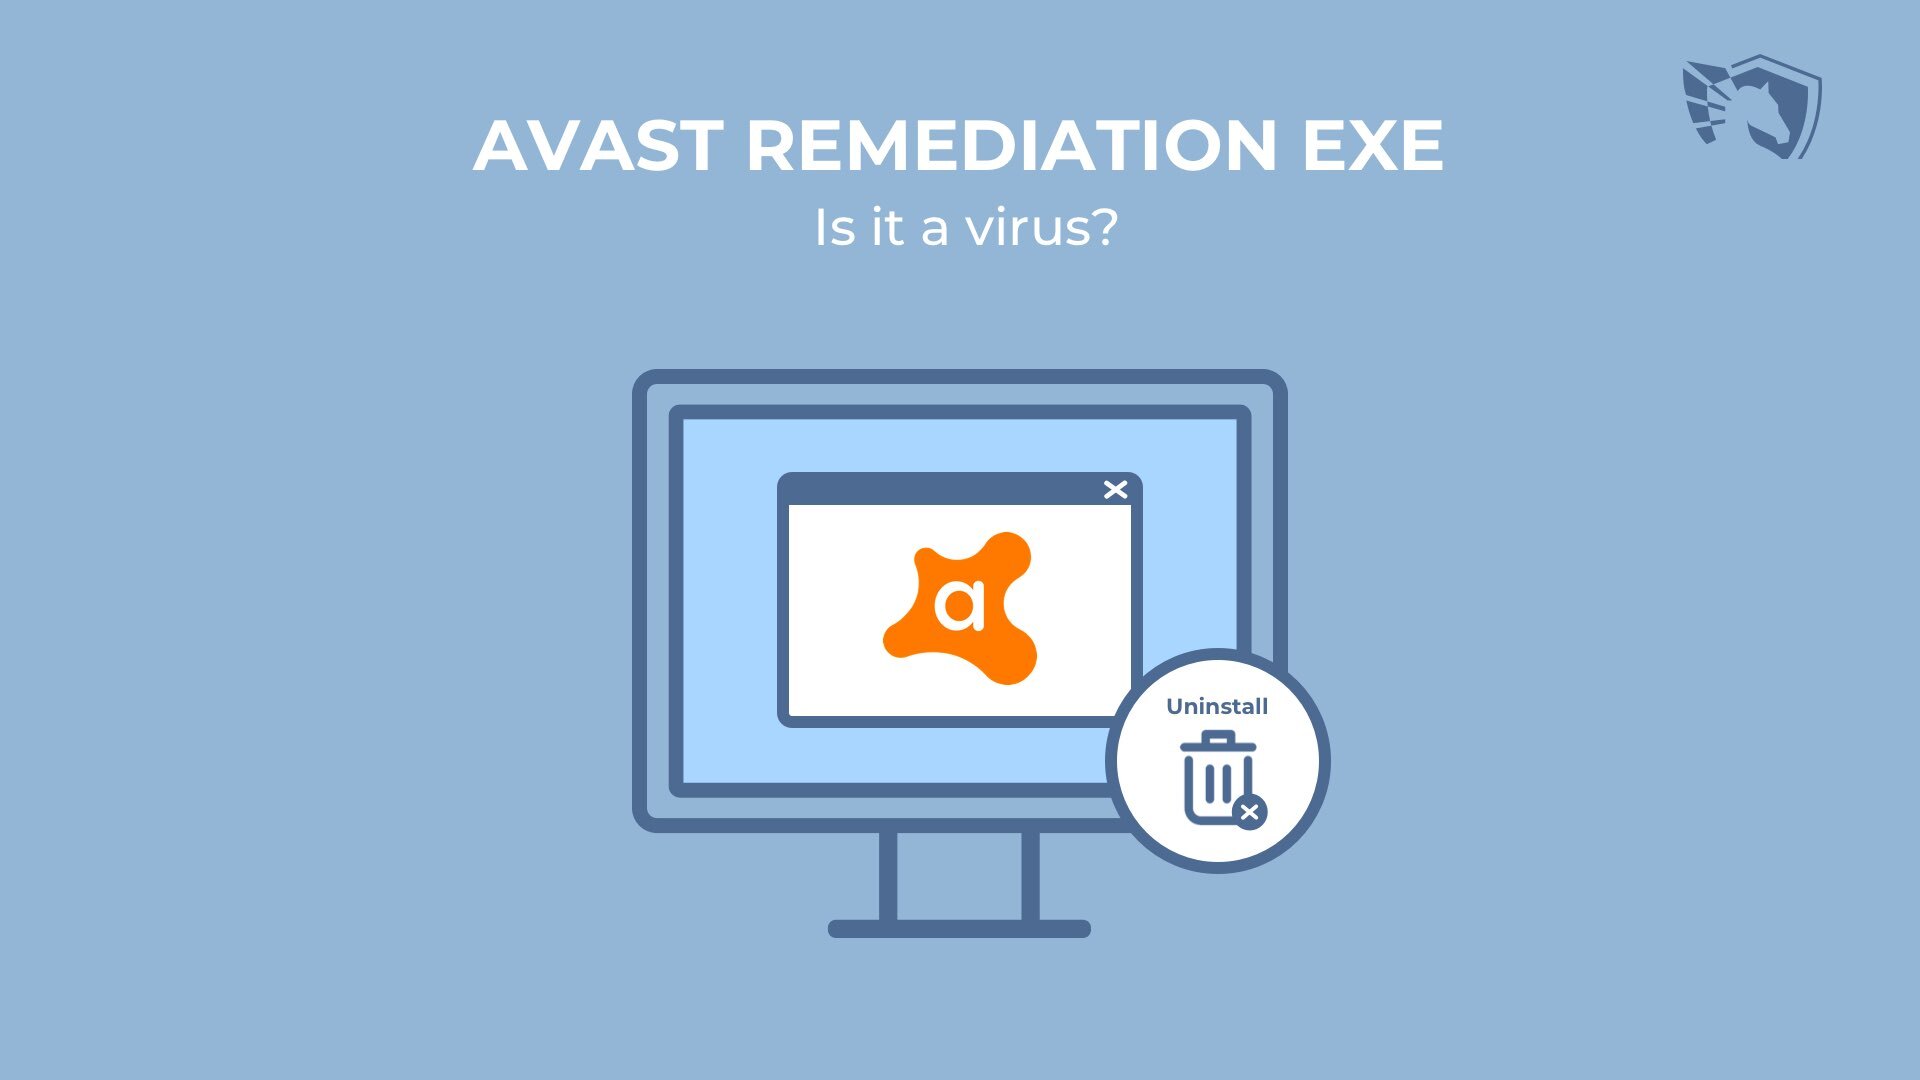 Avast Remediation Exe. Er det et virus?